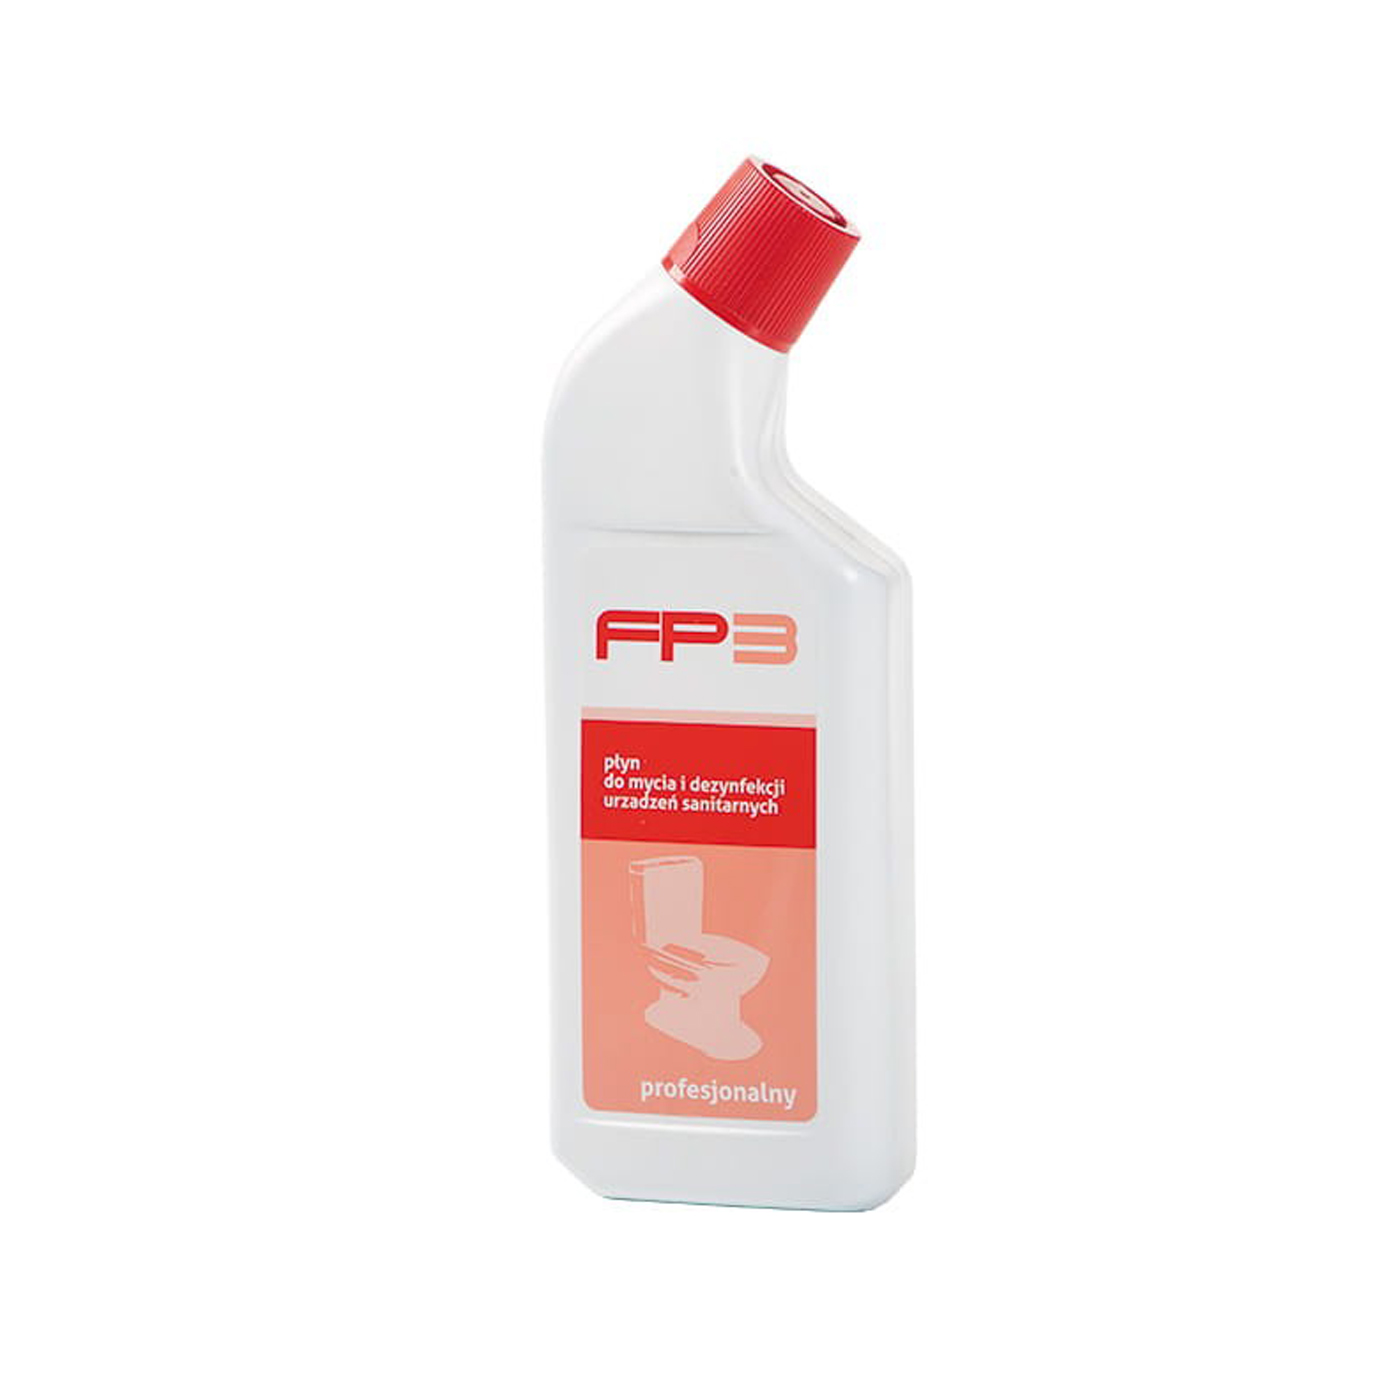 Środek do mycia i dezynfekcji FP-3 Mps